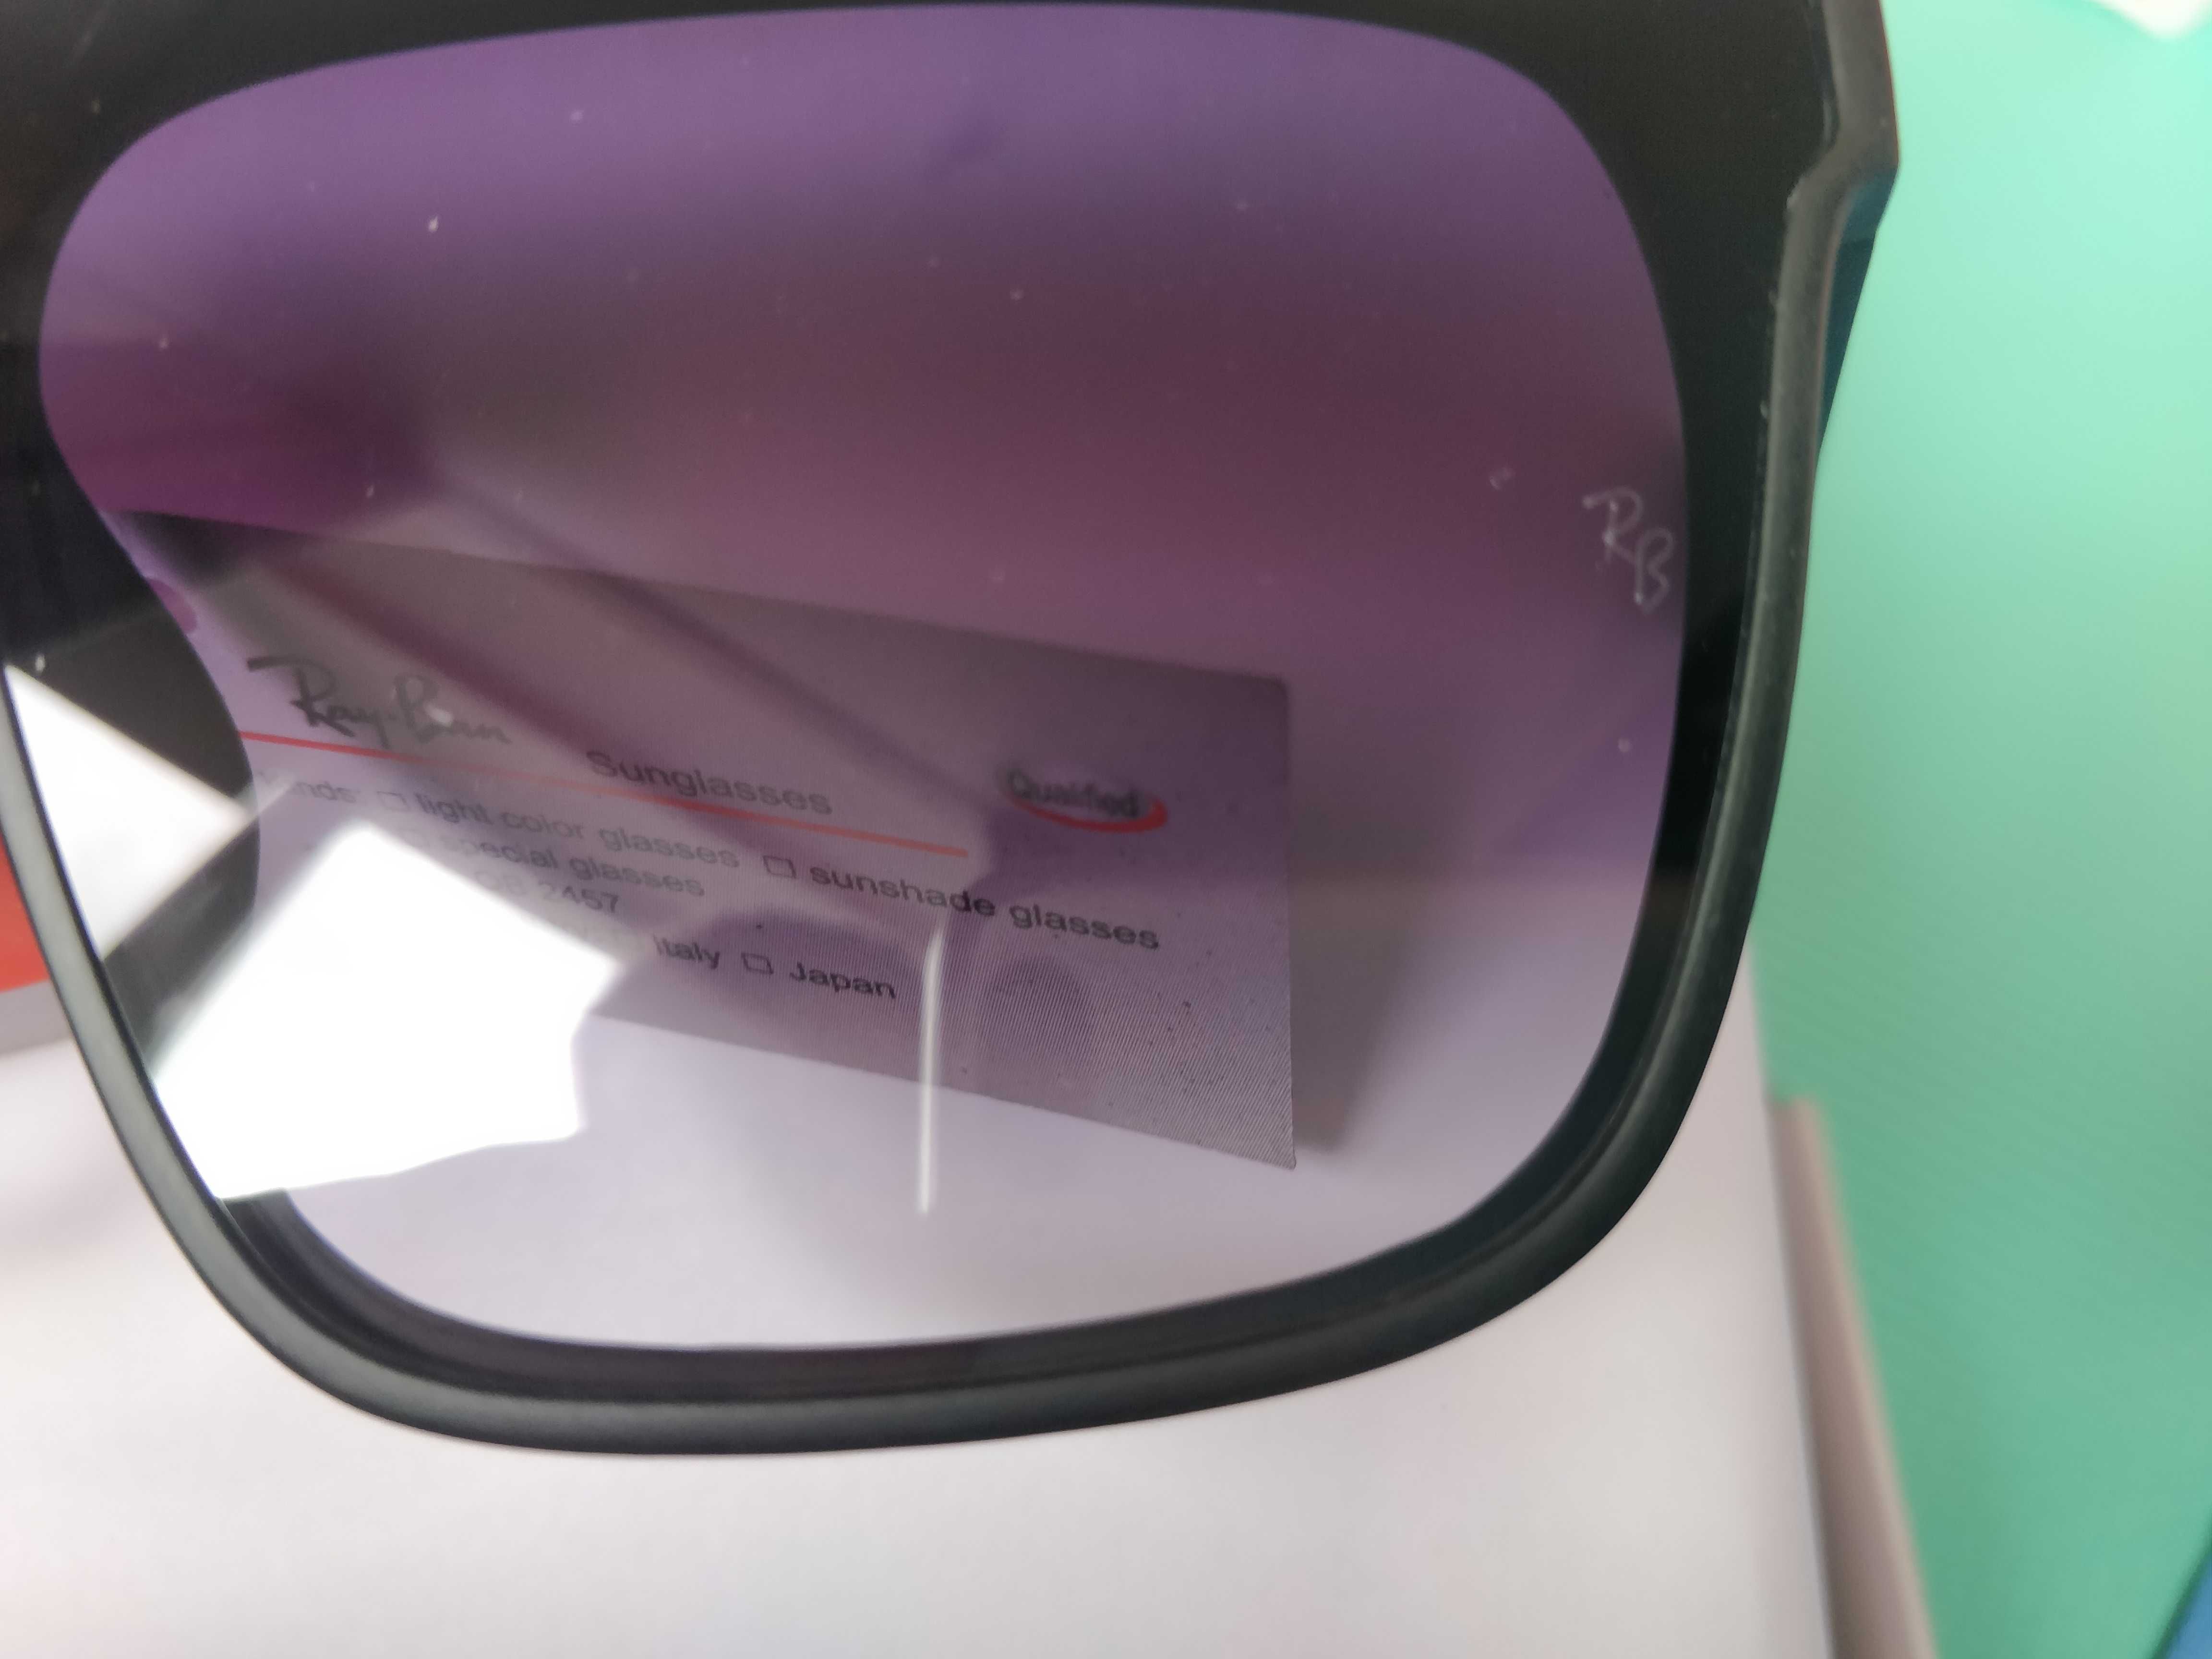 Ochelari de soare Ray Ban UV400 lentila mov degrade